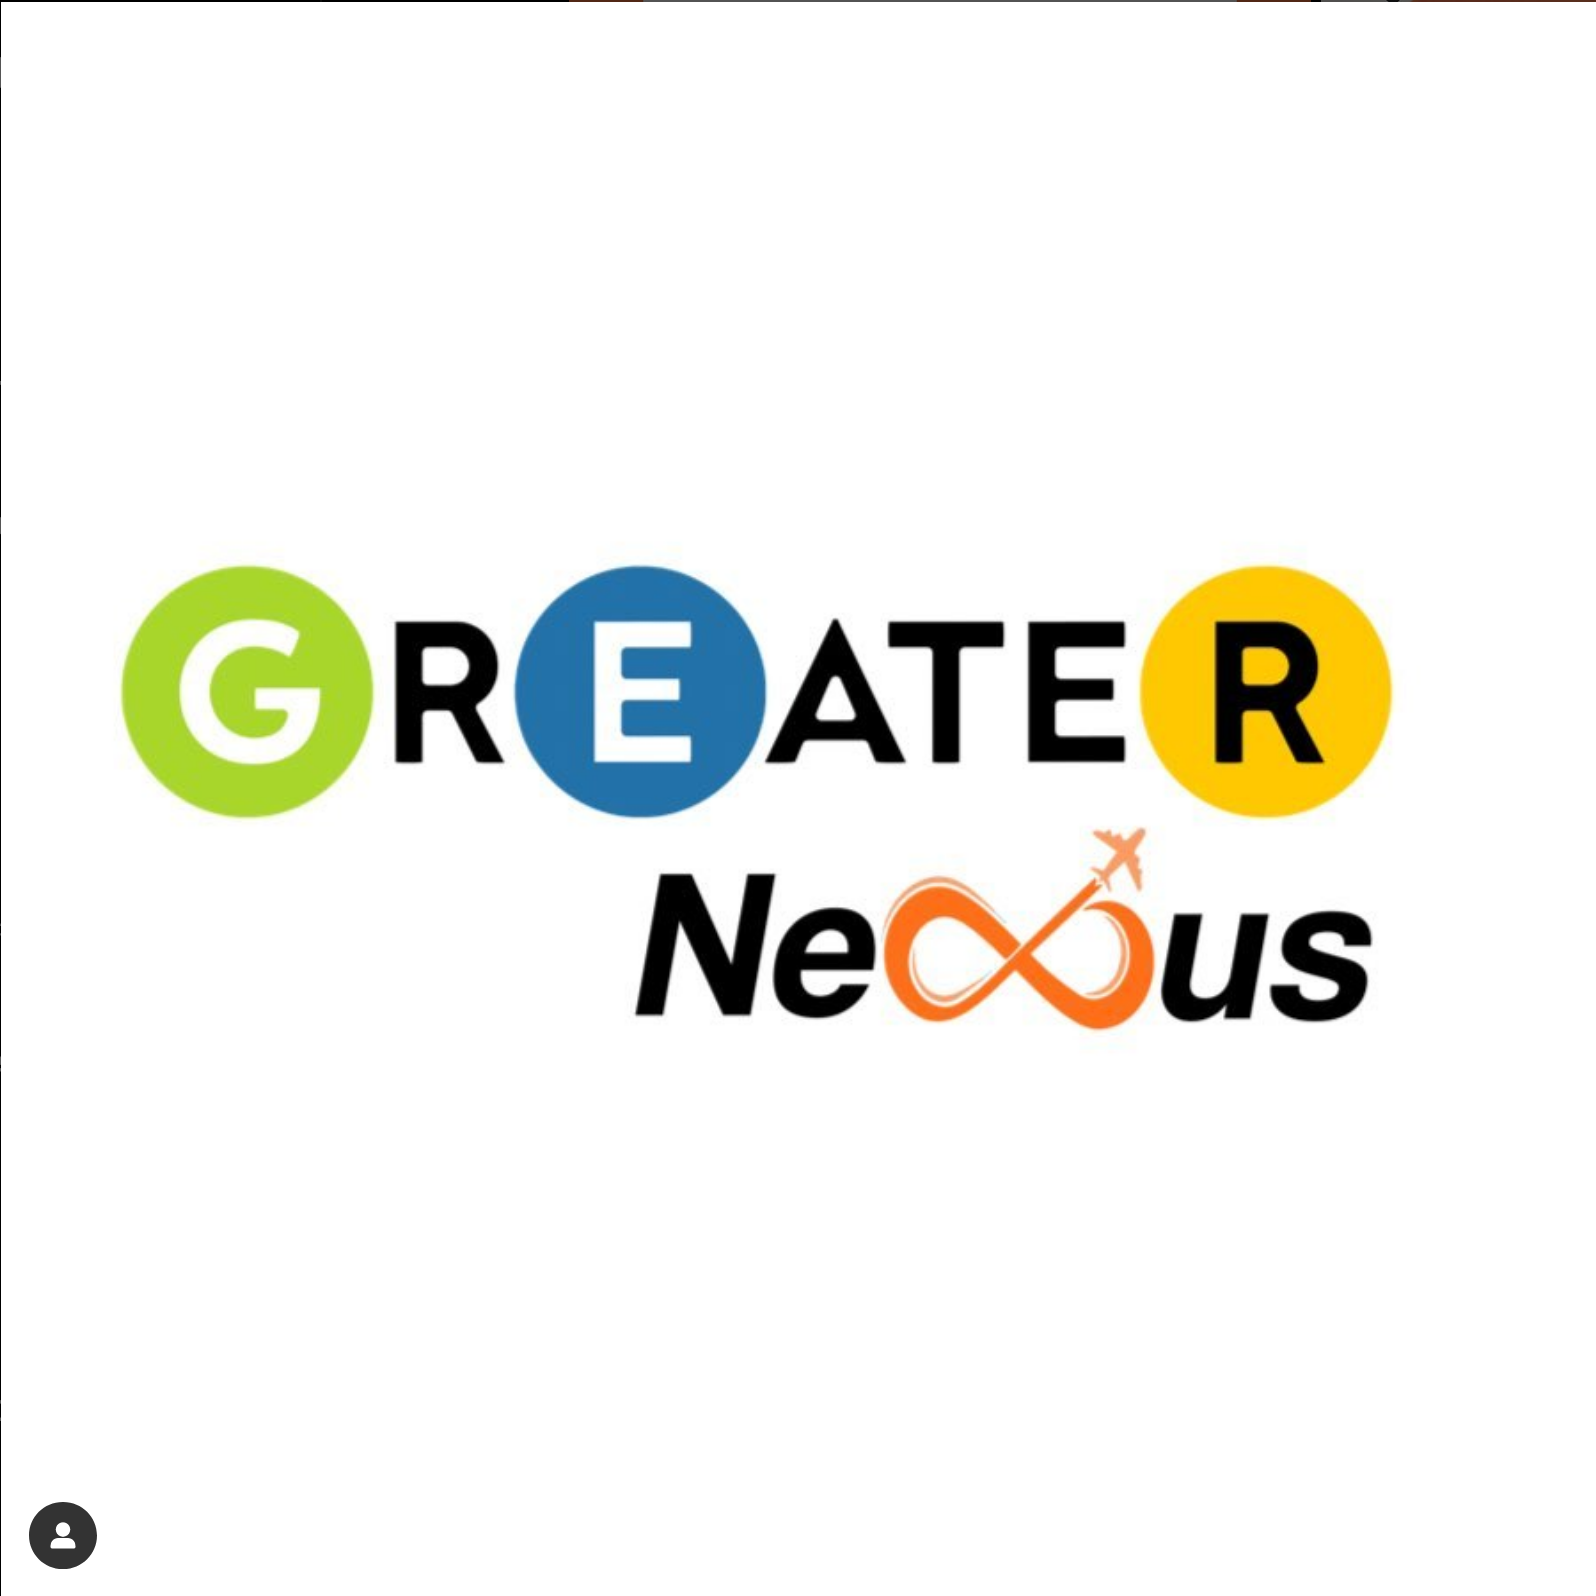 Greater Nexus